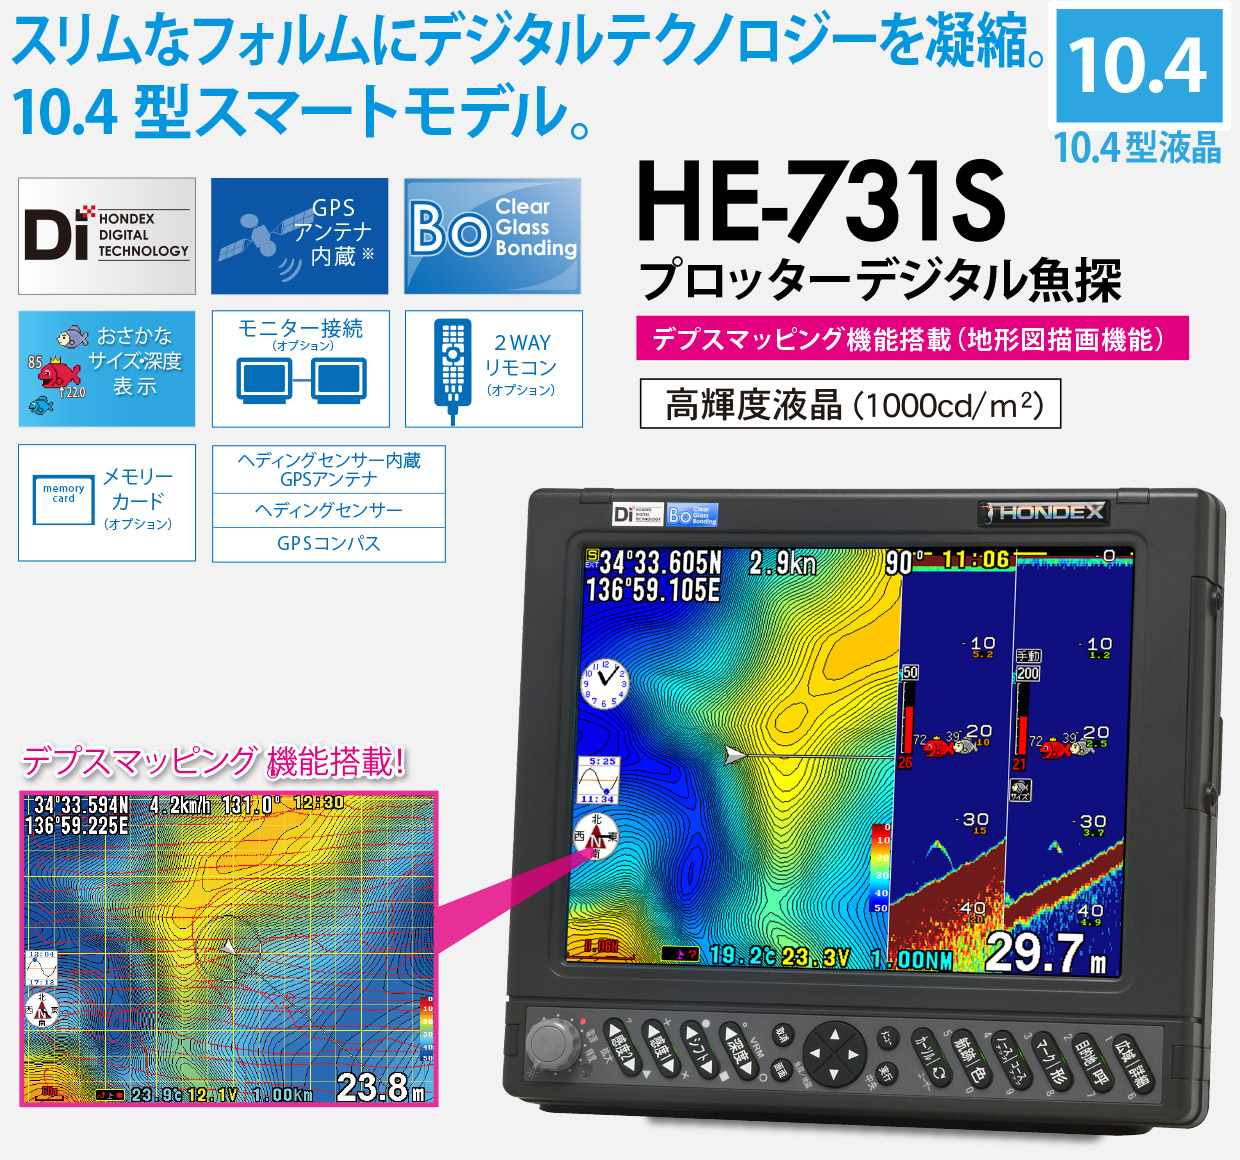 リトルボート販売】ホンデックス 10.4型GPS魚探 HE-7311Di-Bo デジタル